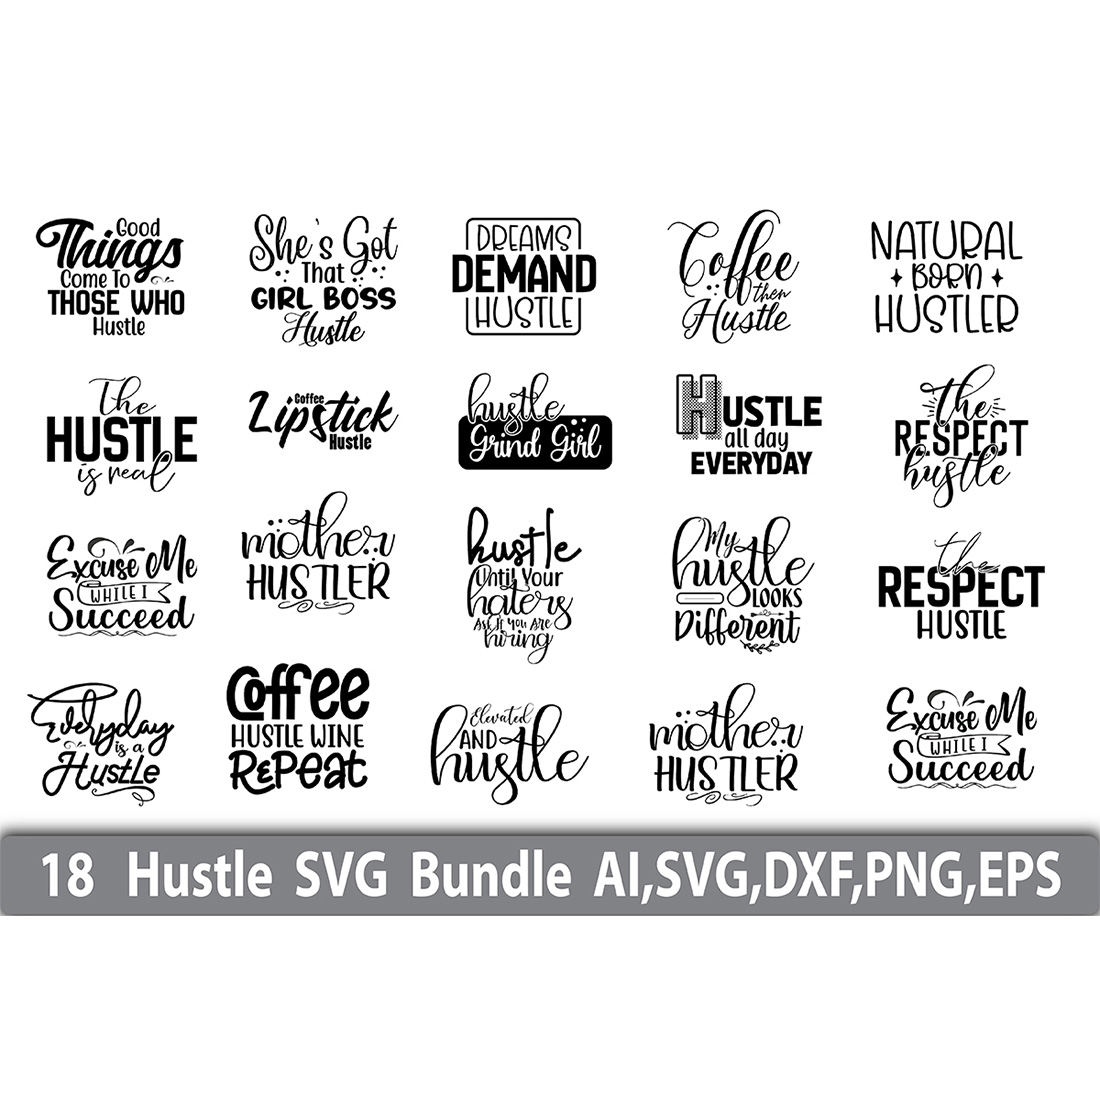 Typography T-shirt Hustle SVG Design Bundle cover image.